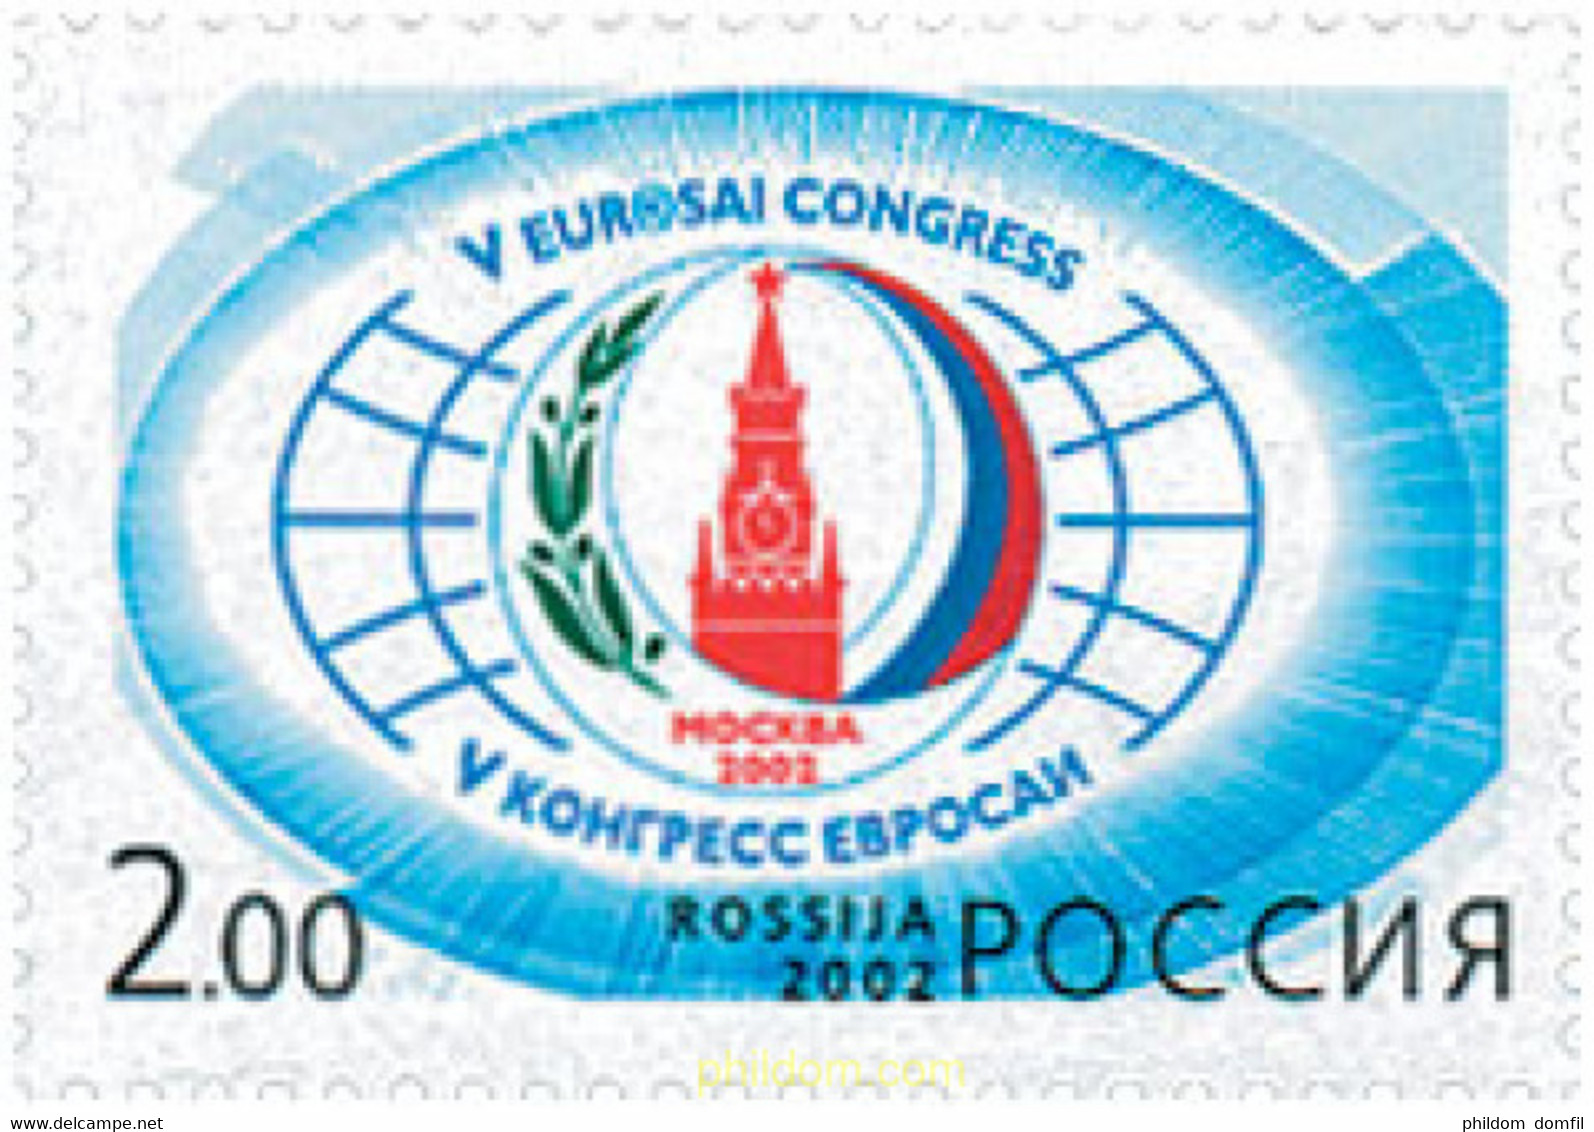 99200 MNH RUSIA 2002 5 CONGRESO DE LA EUROSAI - Used Stamps